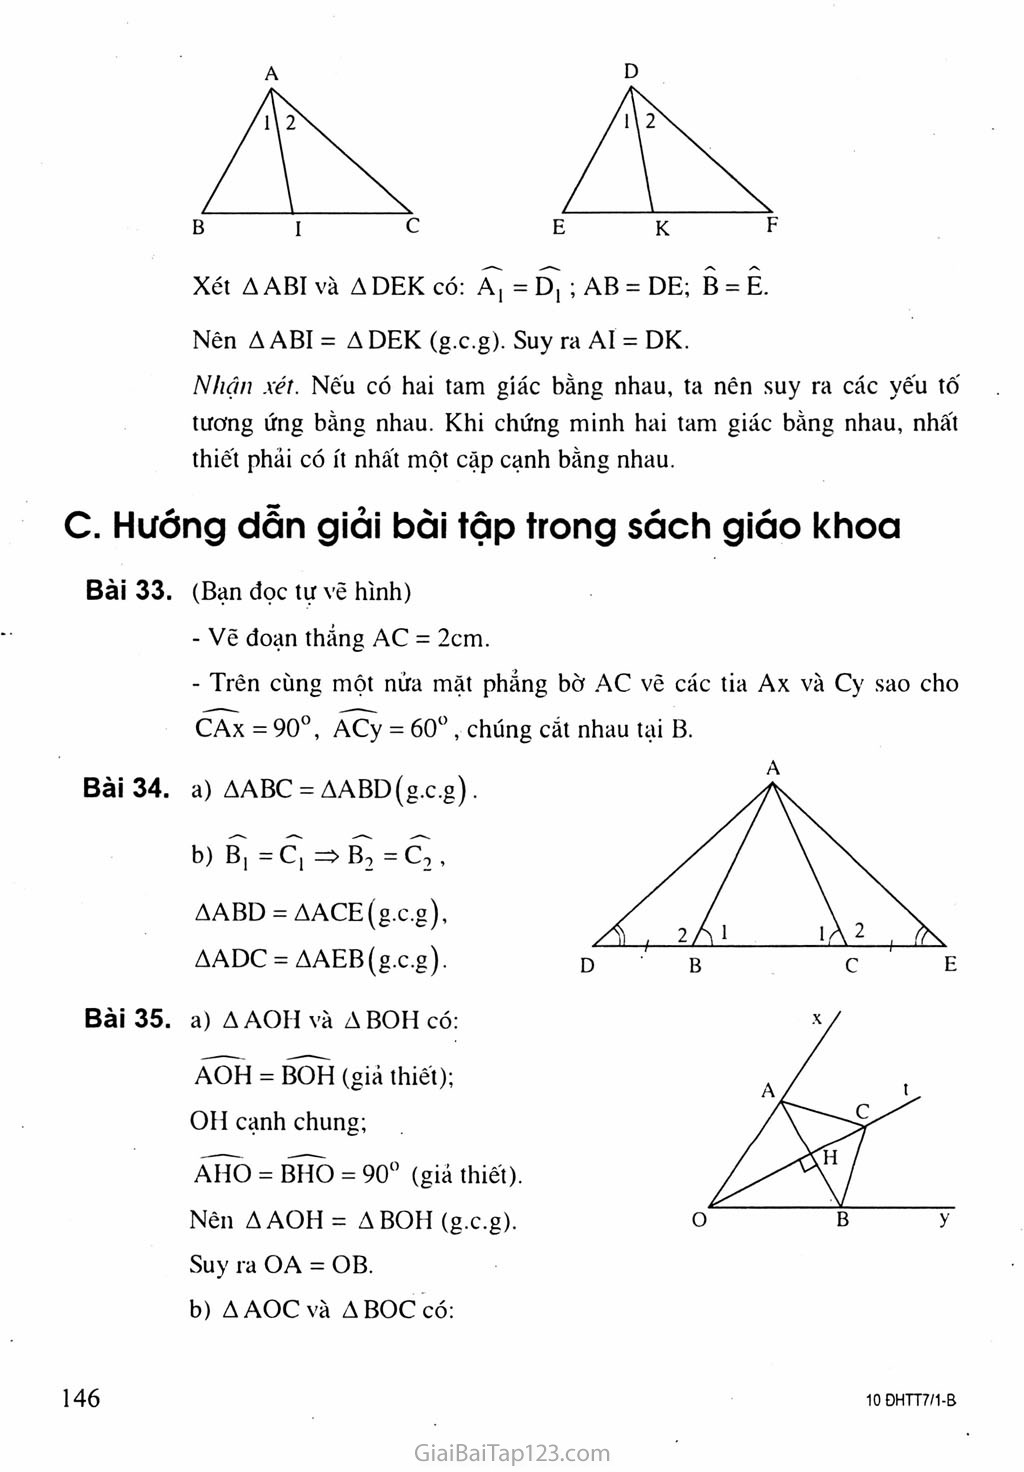 Bài 5. Trường hợp bằng nhau thứ ba của tam giác: góc - cạnh - góc (g.c.g) trang 3